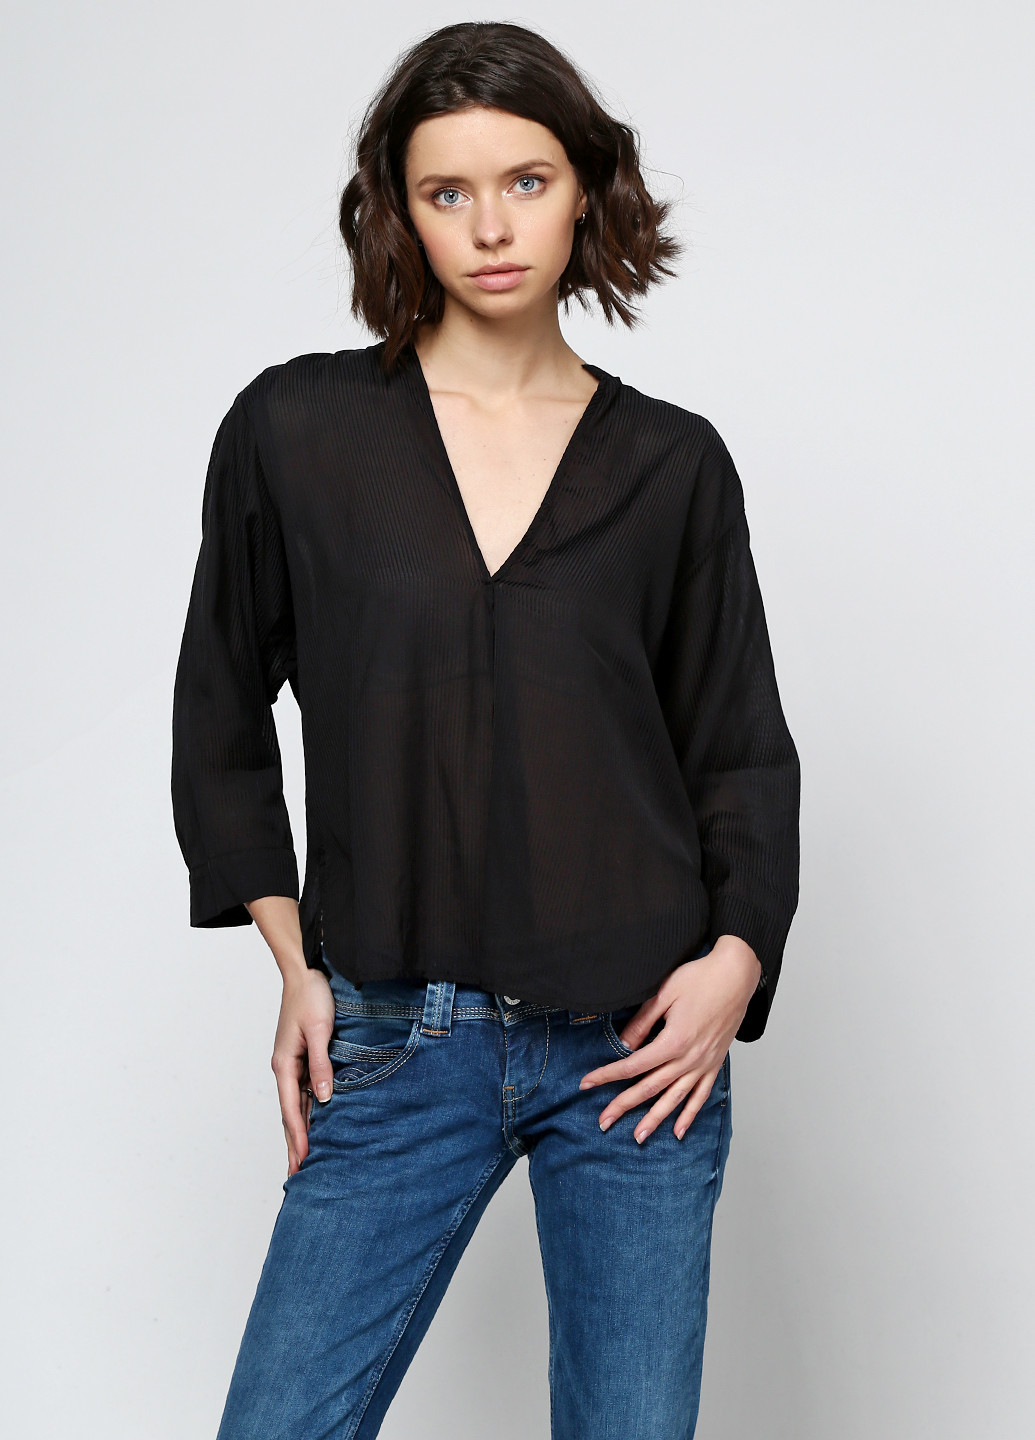 Черная демисезонная блуза And Less